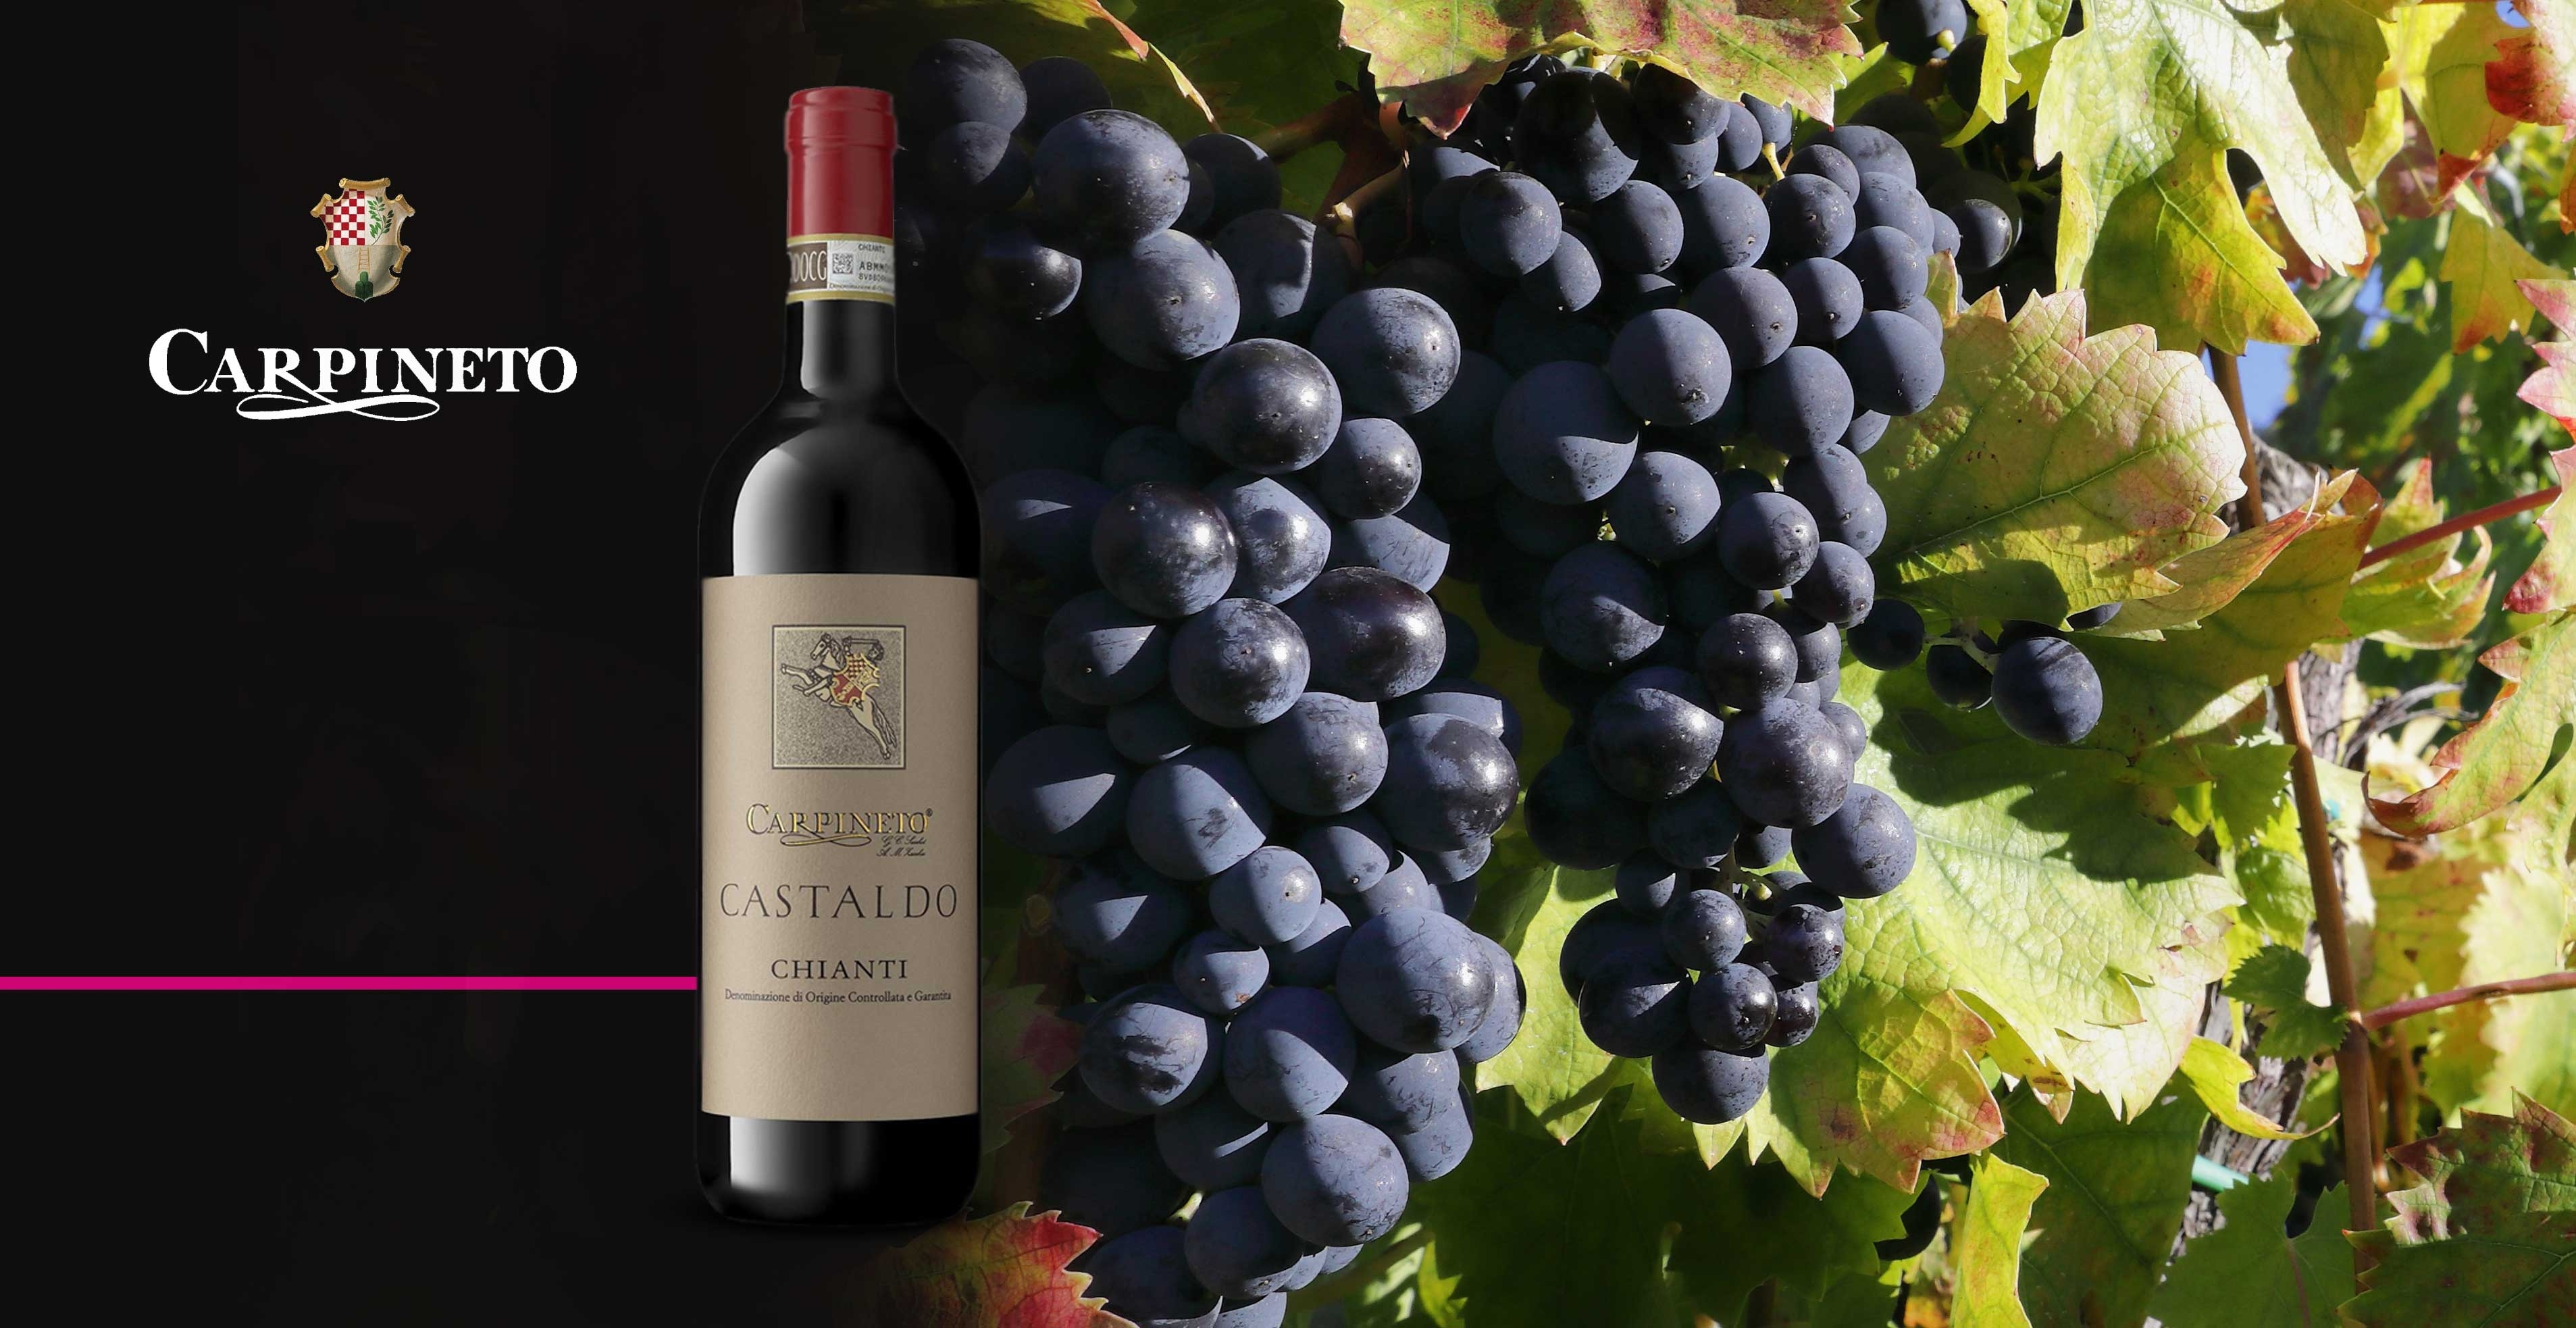 Rode wijn - Carpineto - Chianti Castaldo D.O.C.G.